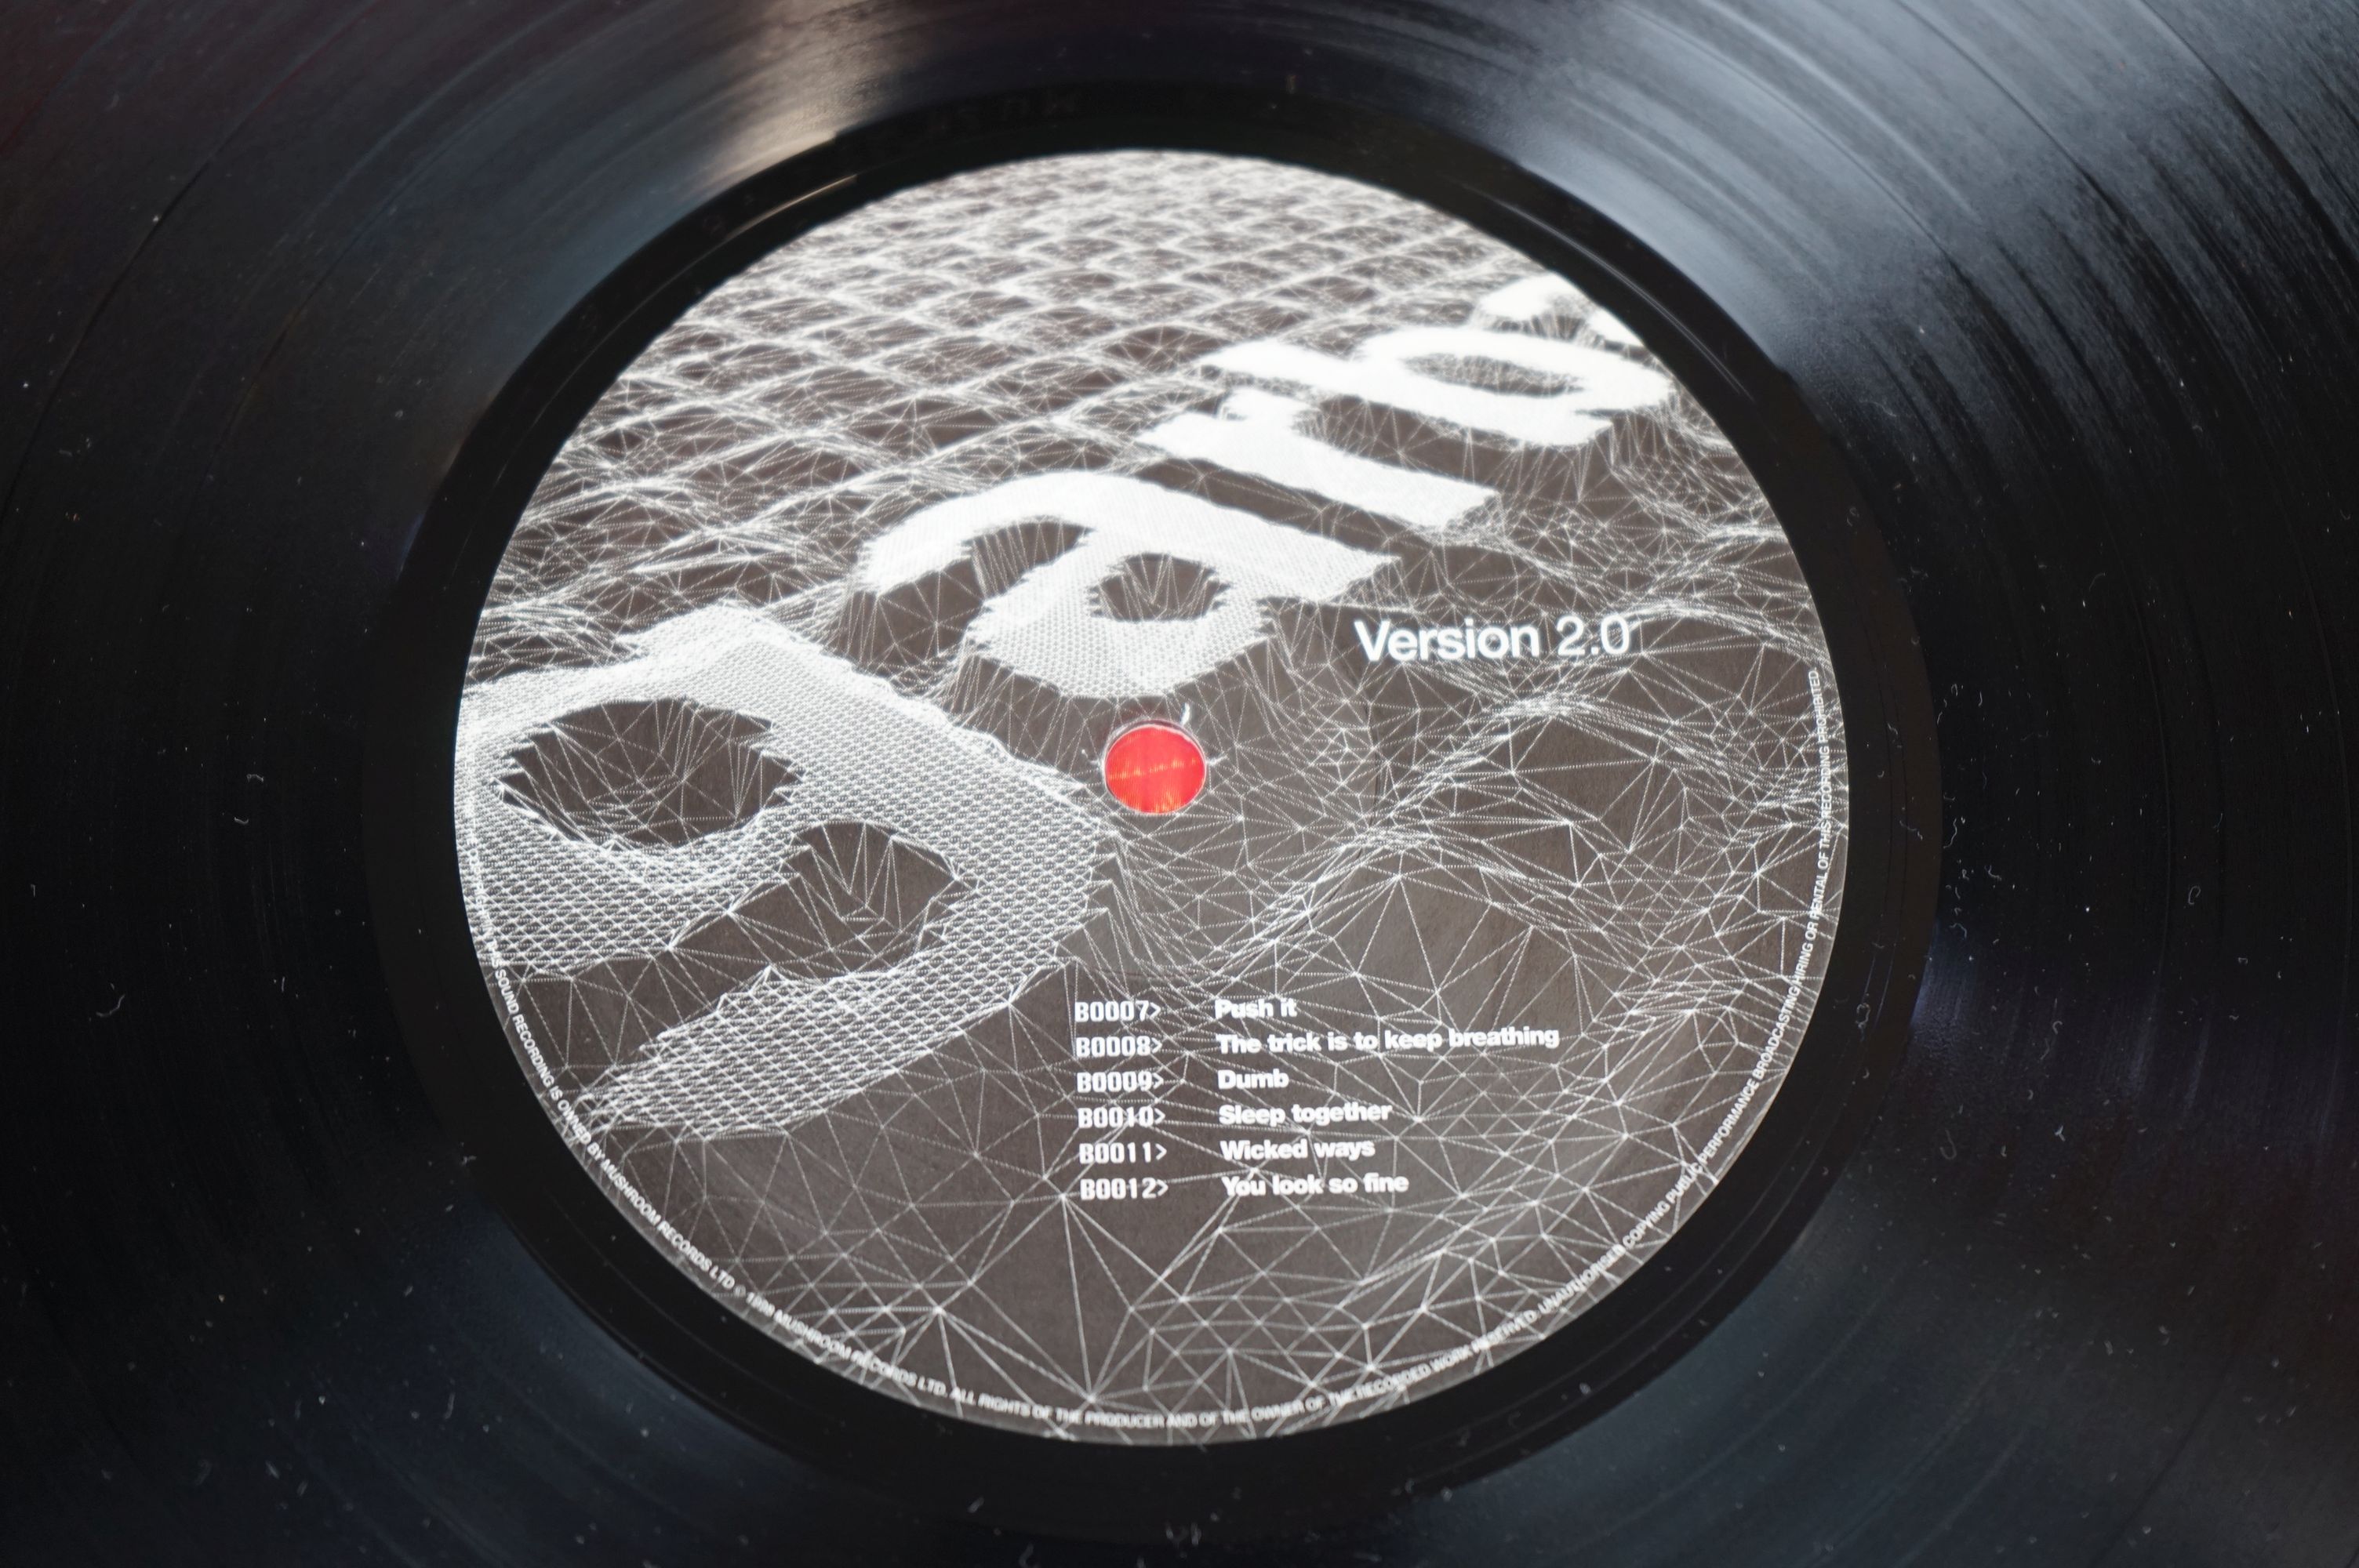 Vinyl - Garbage Version 2.0 LP on Mushroom MUSH29LP, with inner sleeve, sleeve vg+, vinyl ex - Image 8 of 8